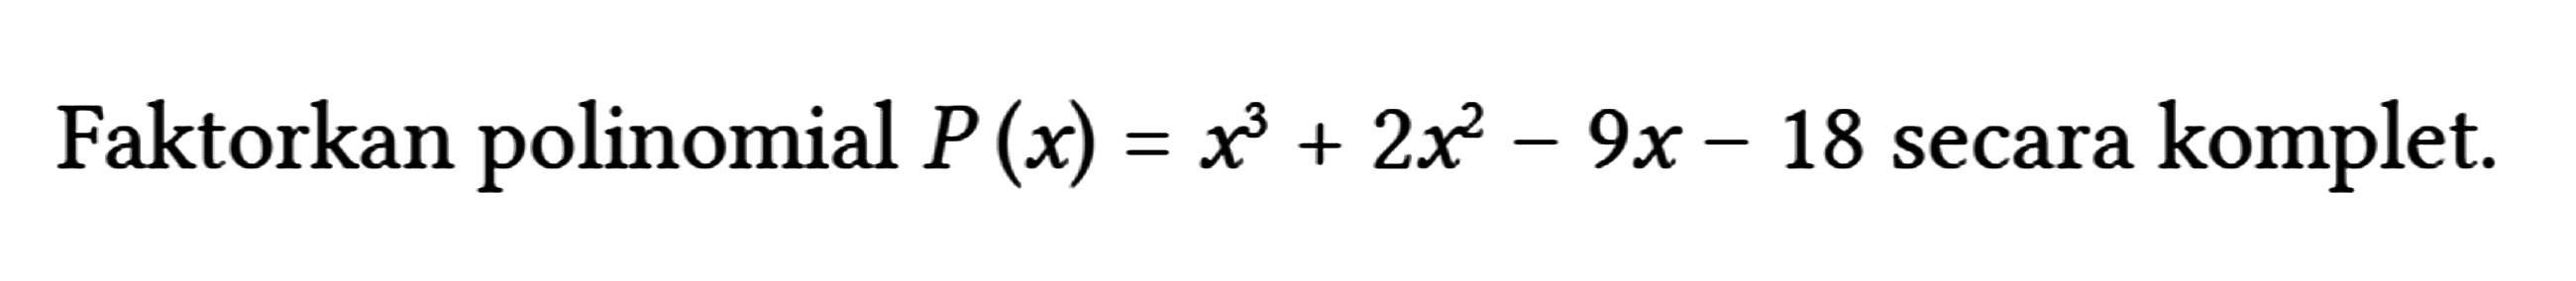 Faktorkan polinomial P(x) = x^3 + 2x^2 - 9x - 18 secara komplet.